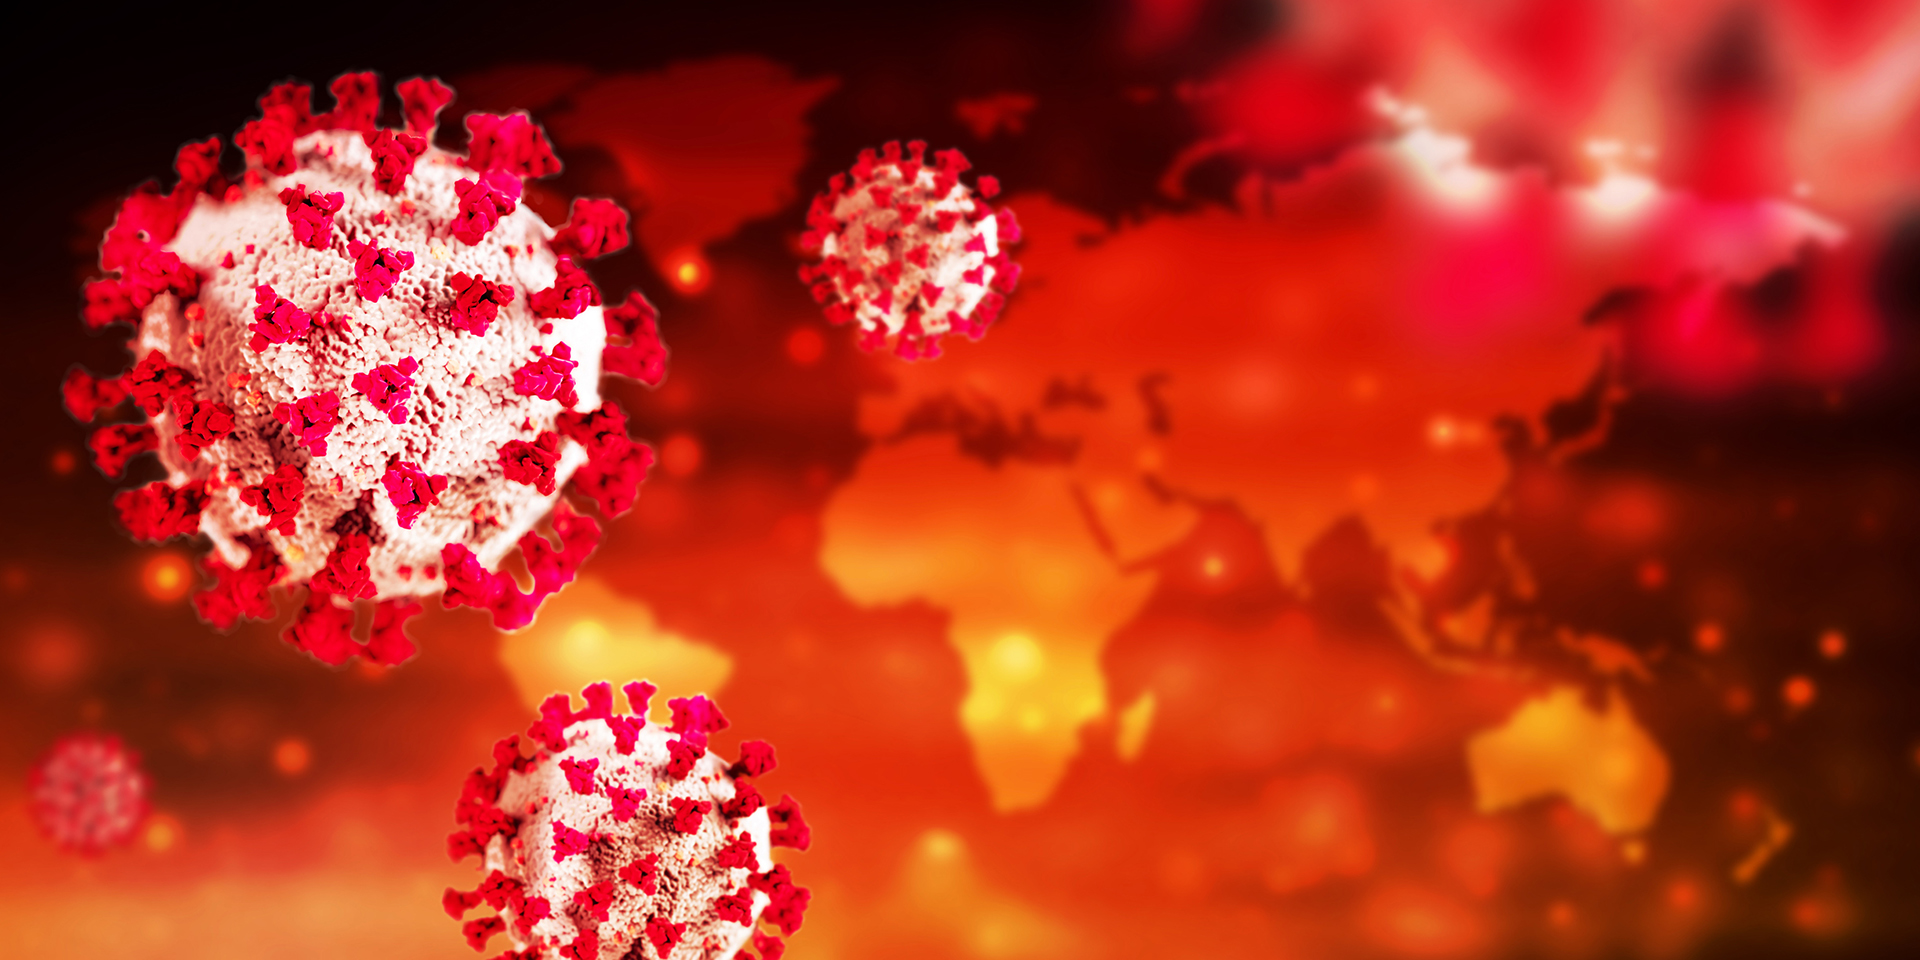 Le virus a réussi à devenir plus infectieux et moins mortel que la souche originale de Wuhan (Getty Images)